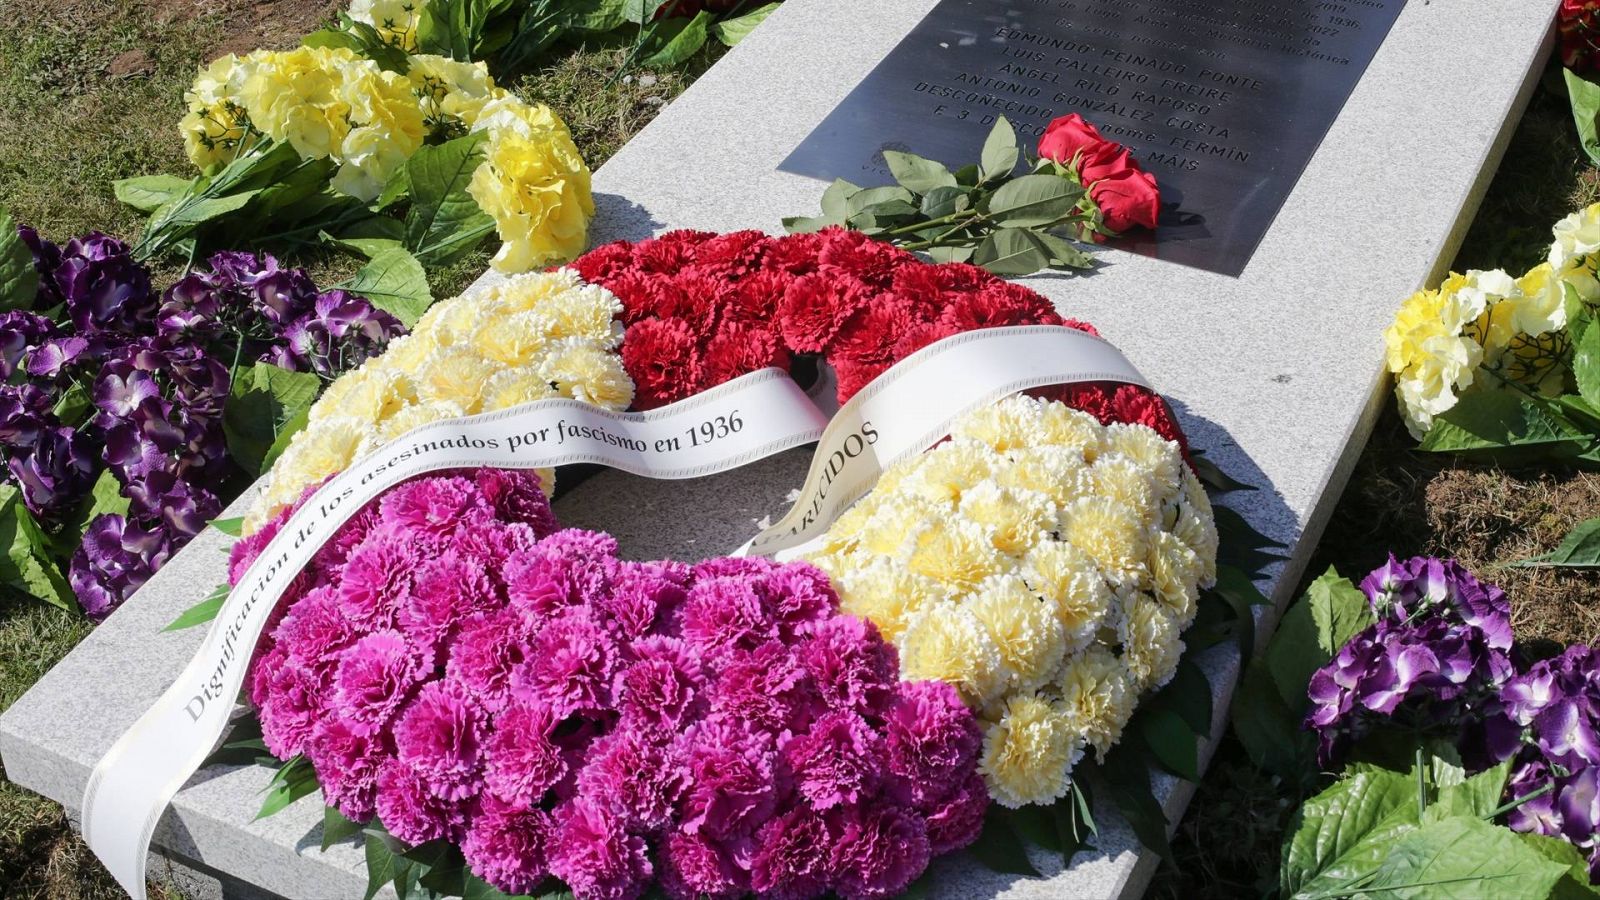 Detalle de los arreglos florales en una placa conmemorativa a las víctimas del franquismo en Lugo, Galicia